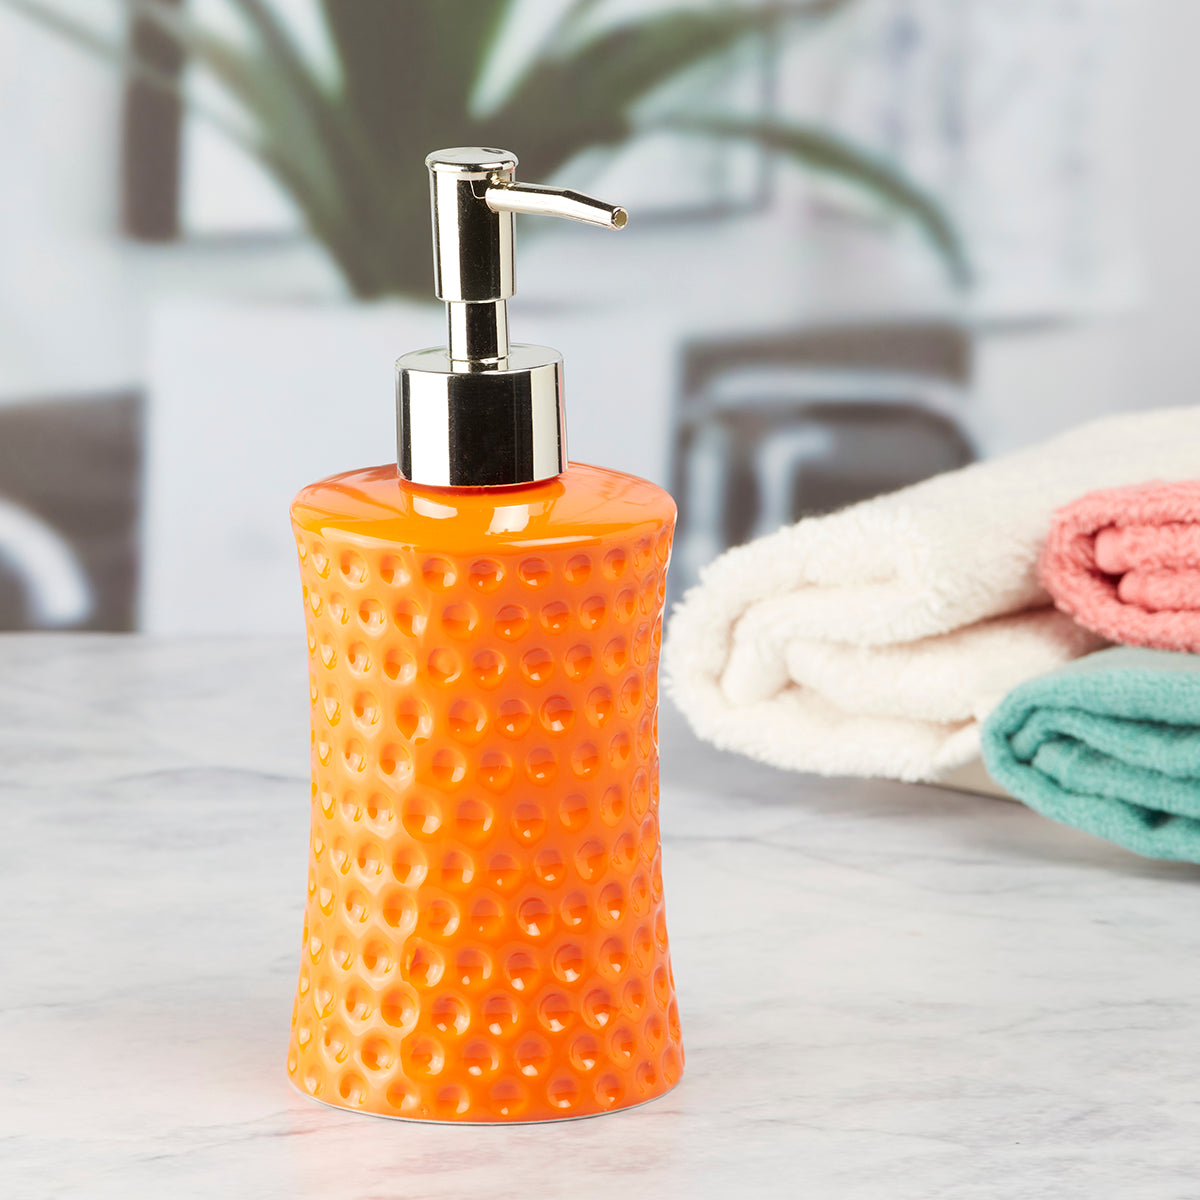 Ceramic Soap Dispenser handwash Pump for Bathroom, Set of 1, Orange (8043)